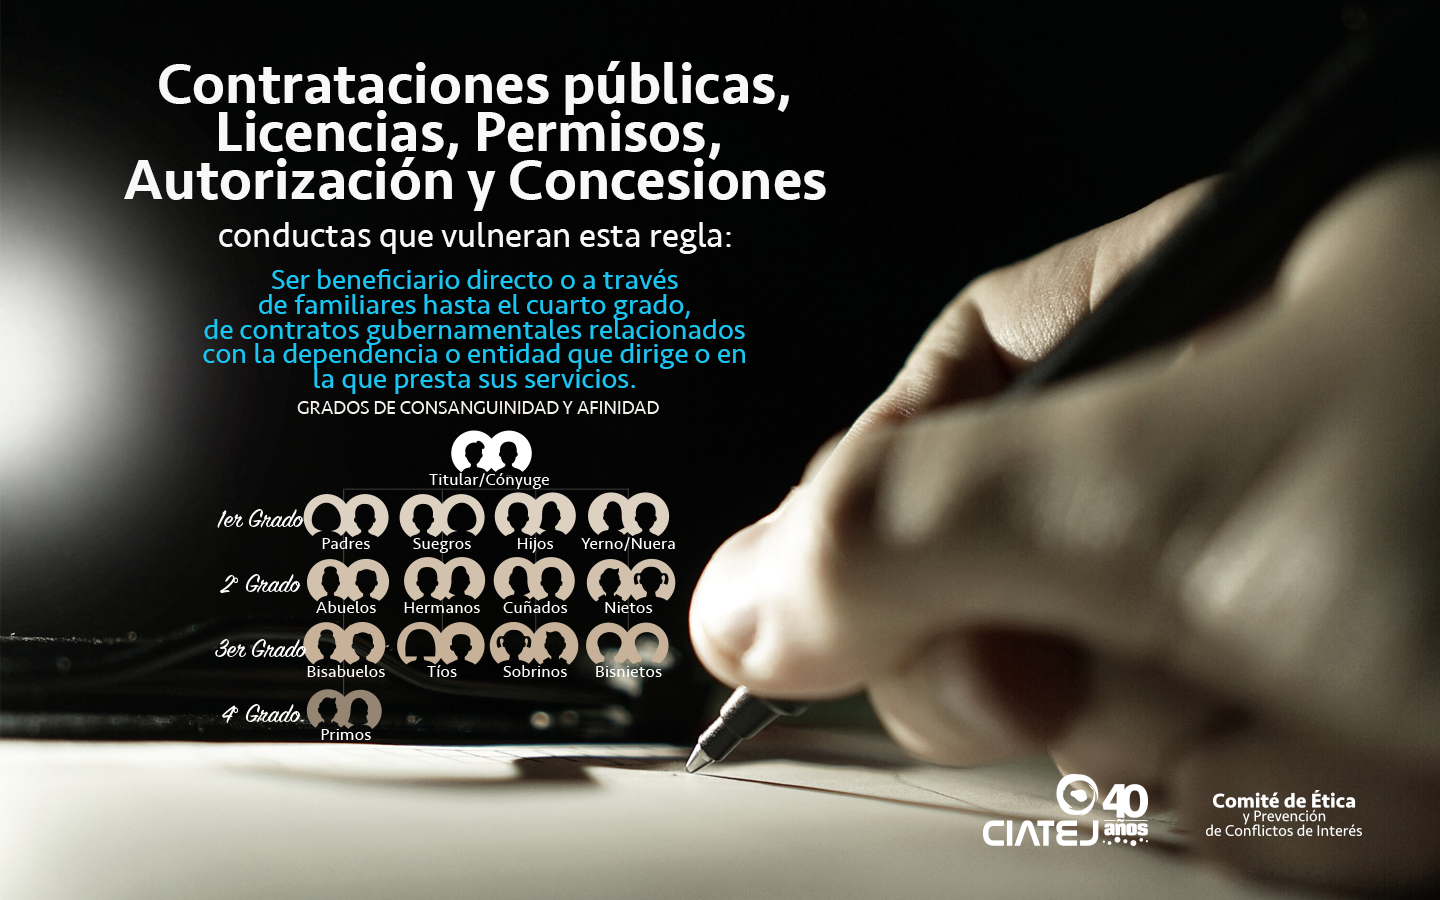 Contrataciones públicas, Licenciaturas, Permisos, Autorización y Concesiones.